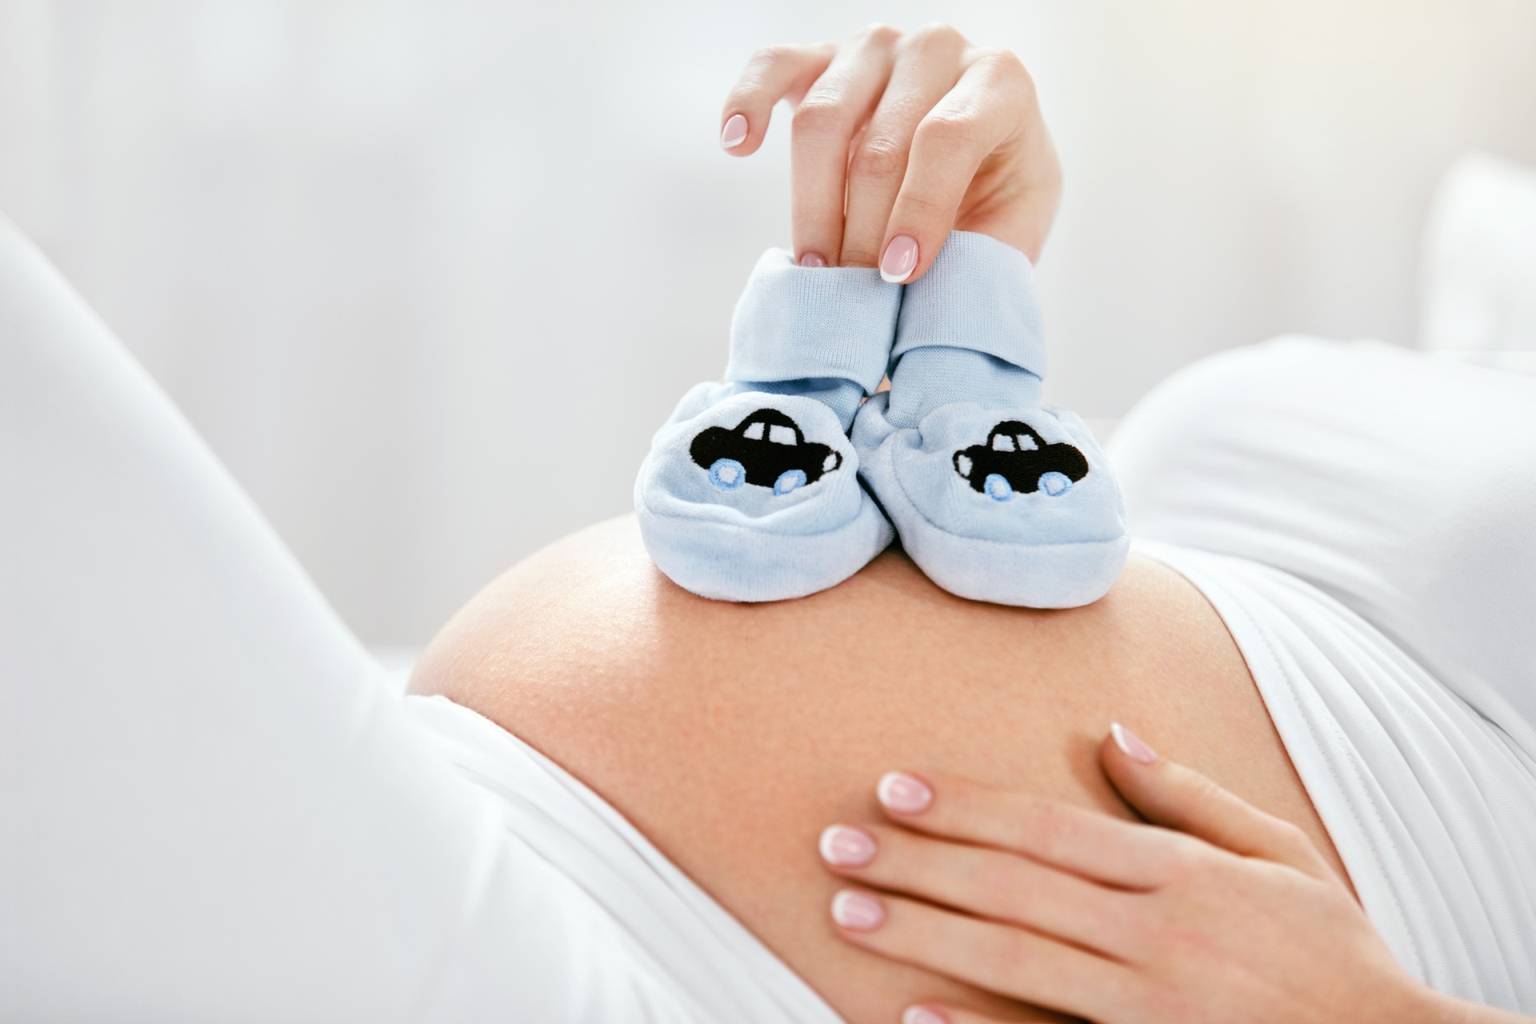 Jak przygotować się na narodziny dziecka? Homeopatia przed porodem i na połóg. Kobieta kładzie małe buciki niemowlęce na brzuch w zaawansowanej ciąży.